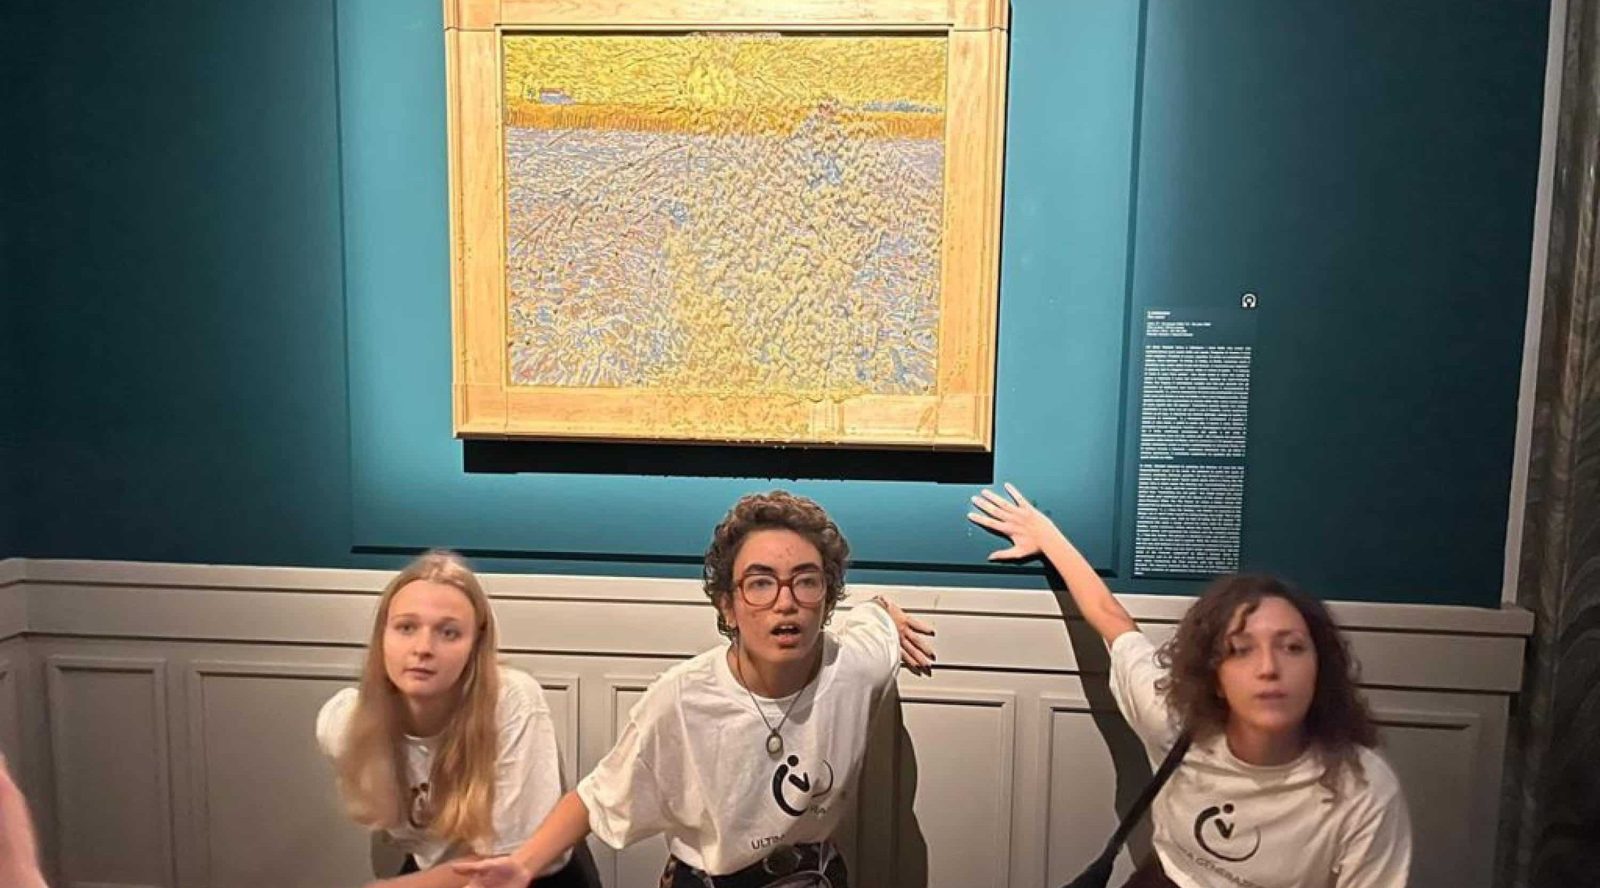 Ultima Generazione imbratta "Il seminatore" di Van Gogh